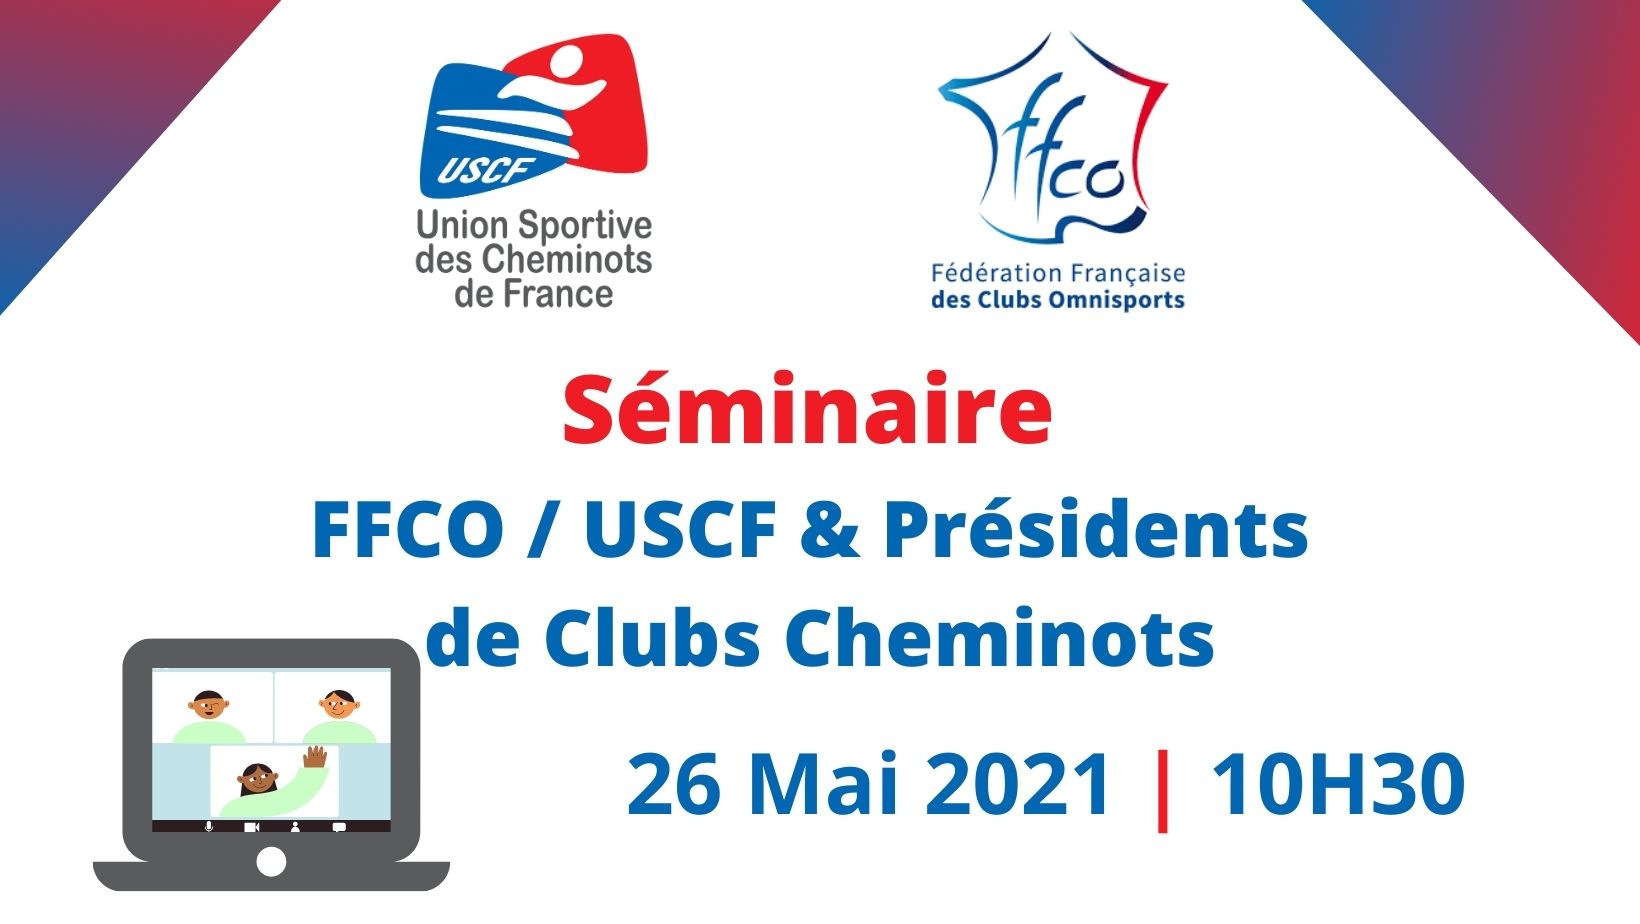 Un séminaire FFCO / USCF & Présidents de Clubs Cheminots le 26 Mai